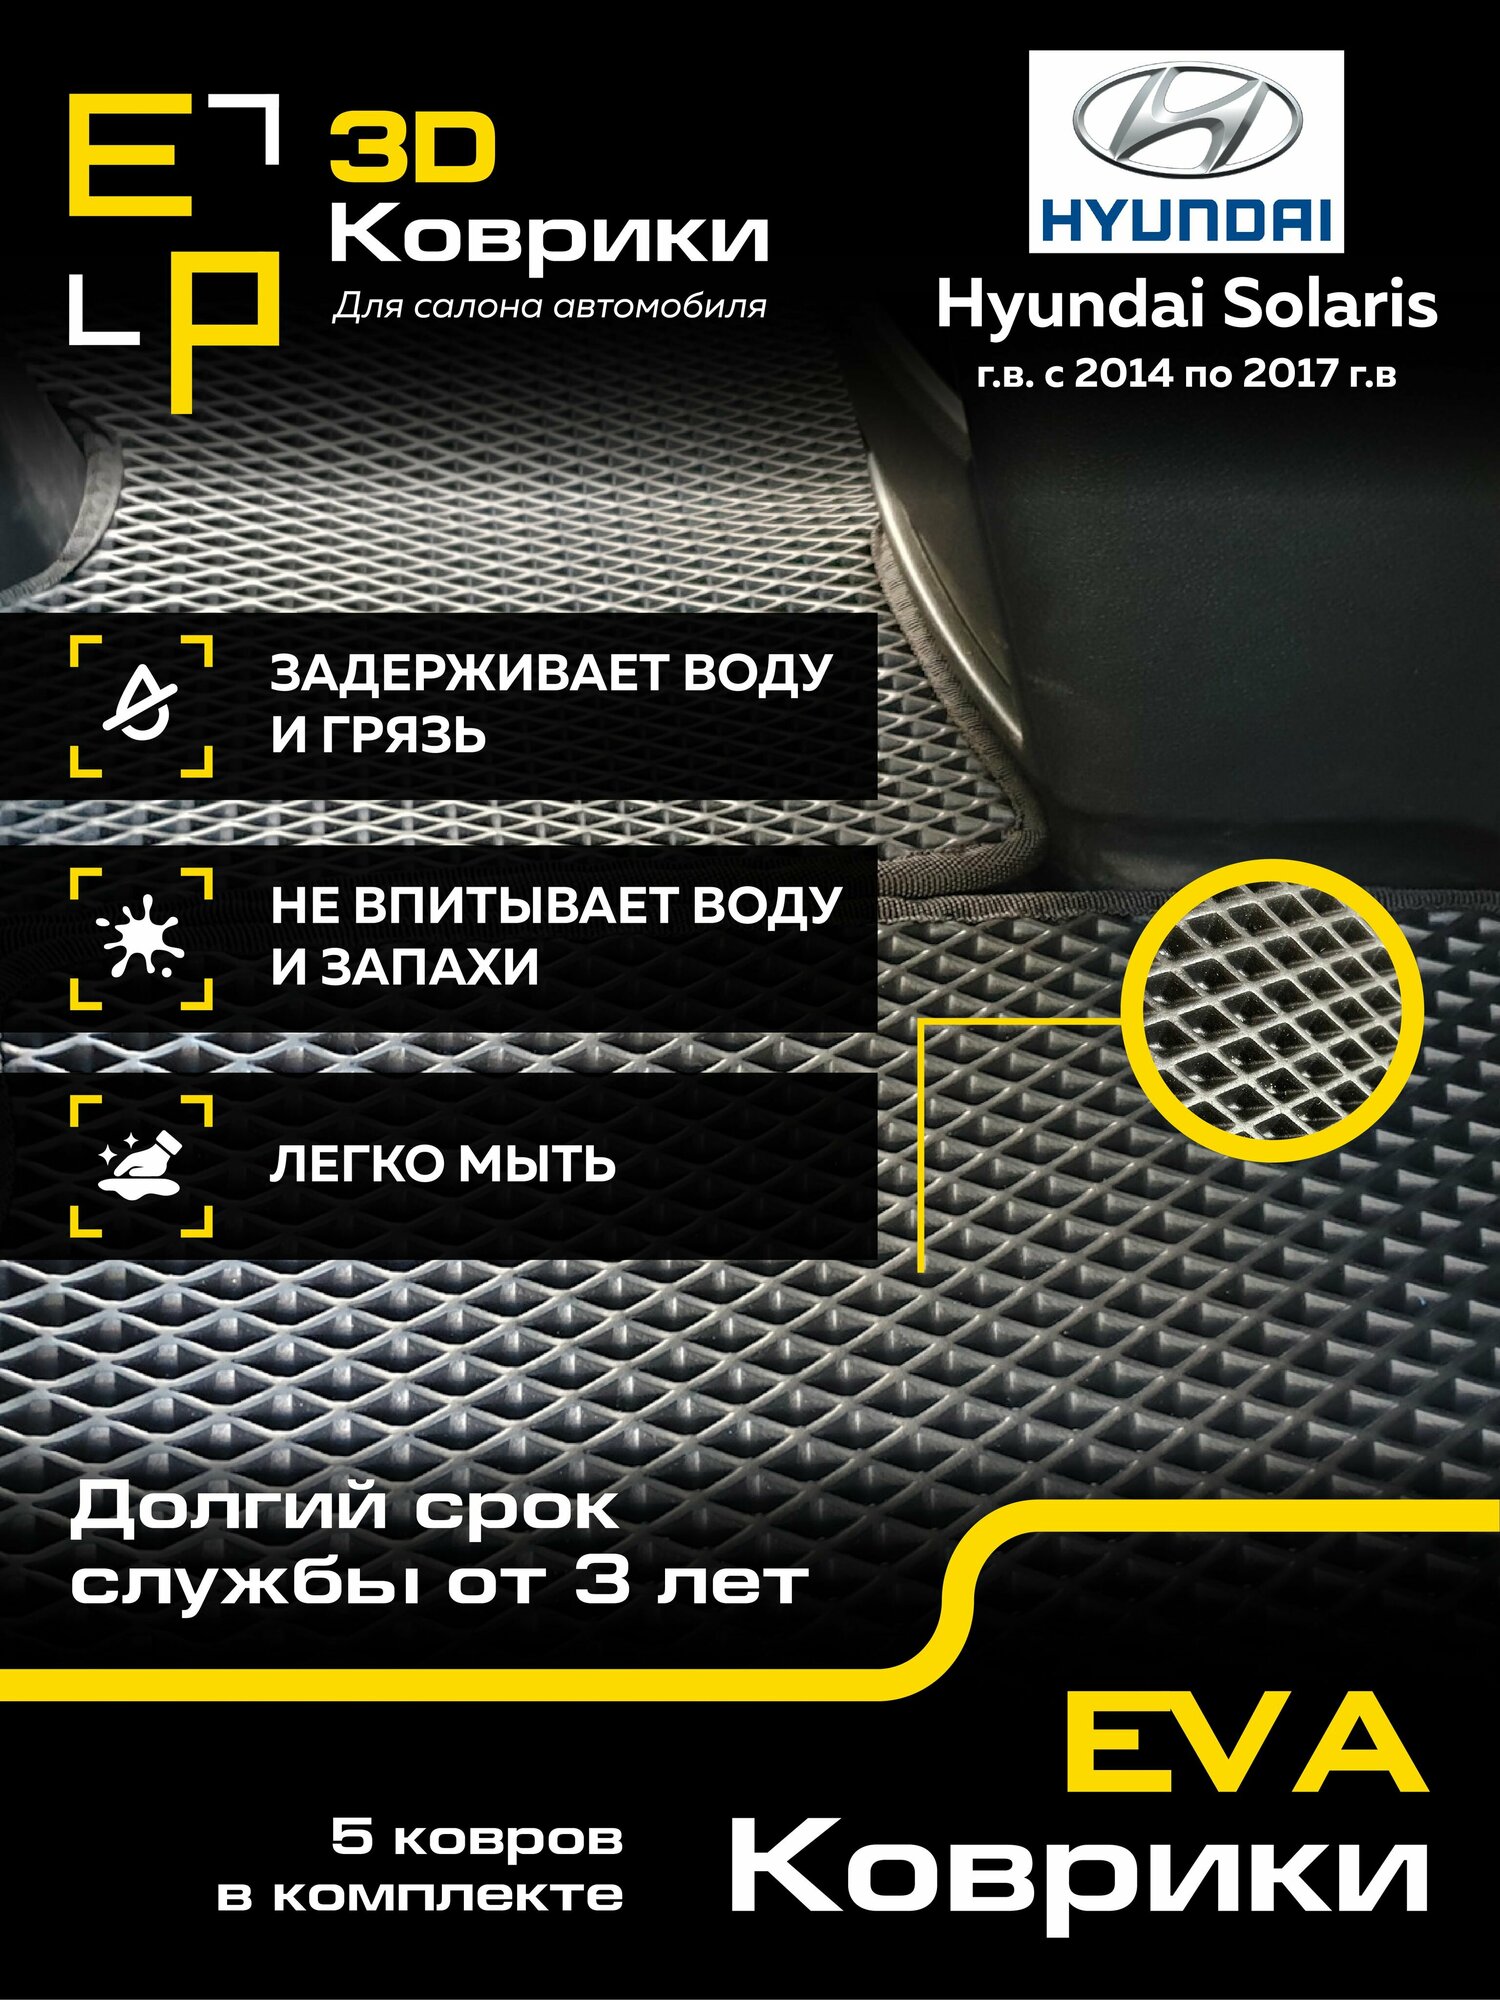 Коврики в машину Hyundai Solaris 3D с желтым кантом, 2014-2017 года выпуска